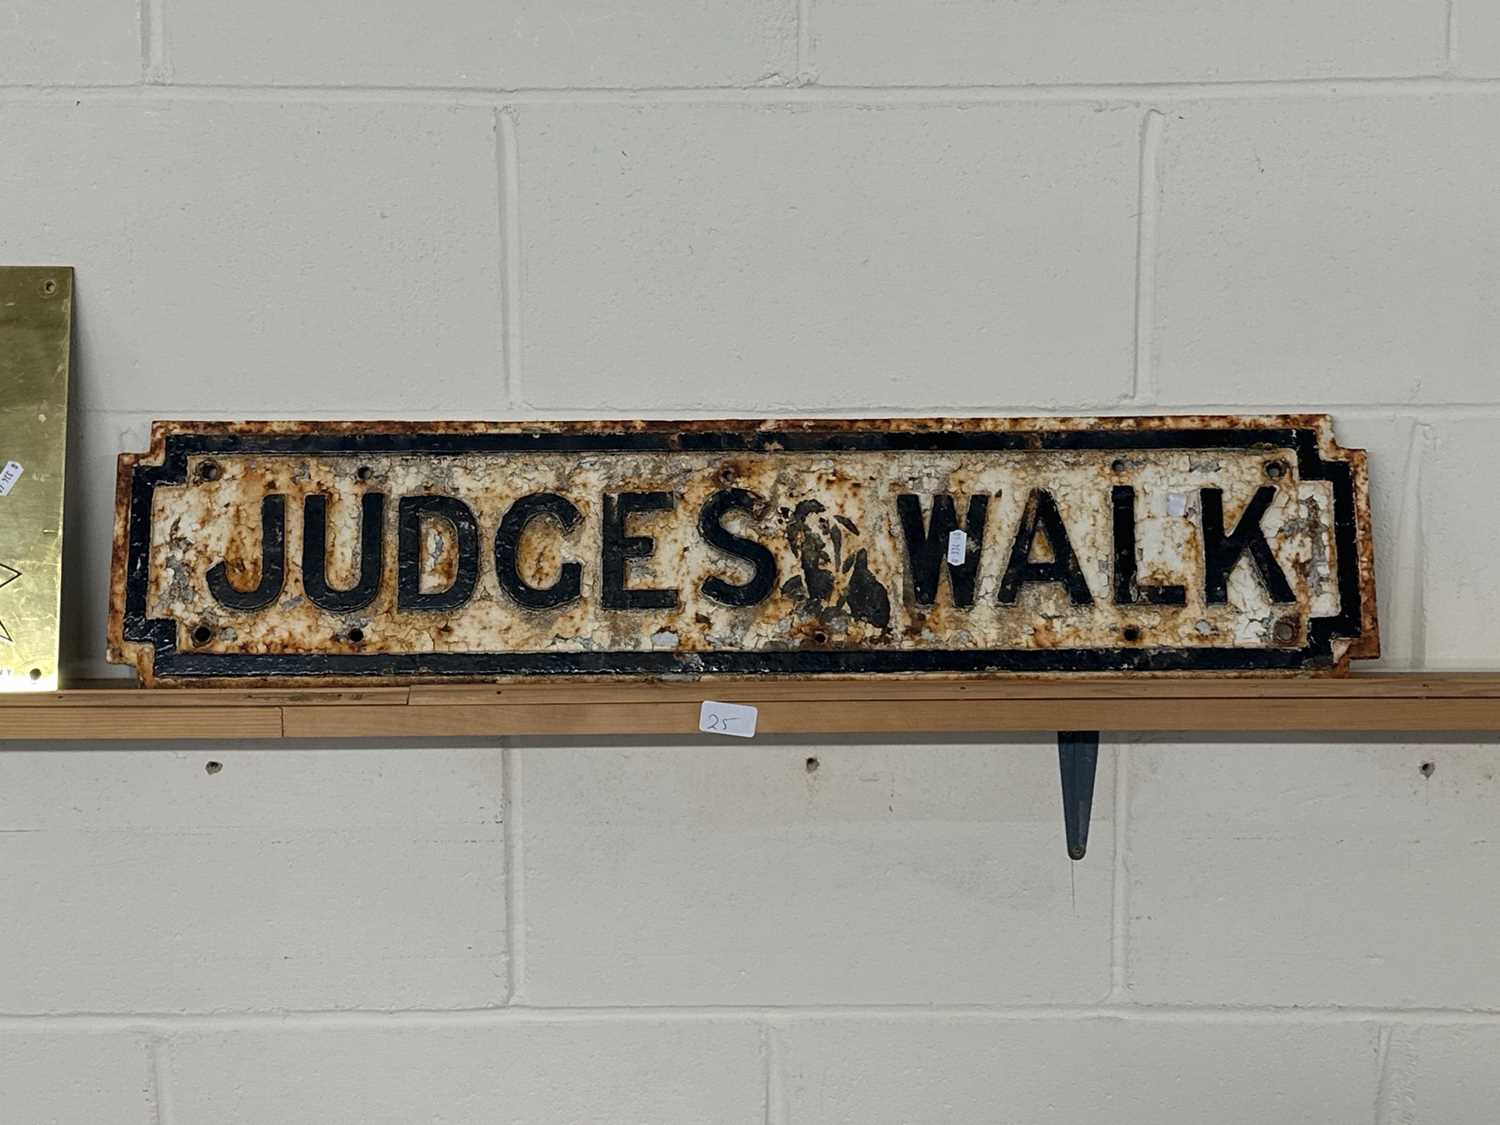 Lot 25 - Vintage cast road sign "Judges Walk"